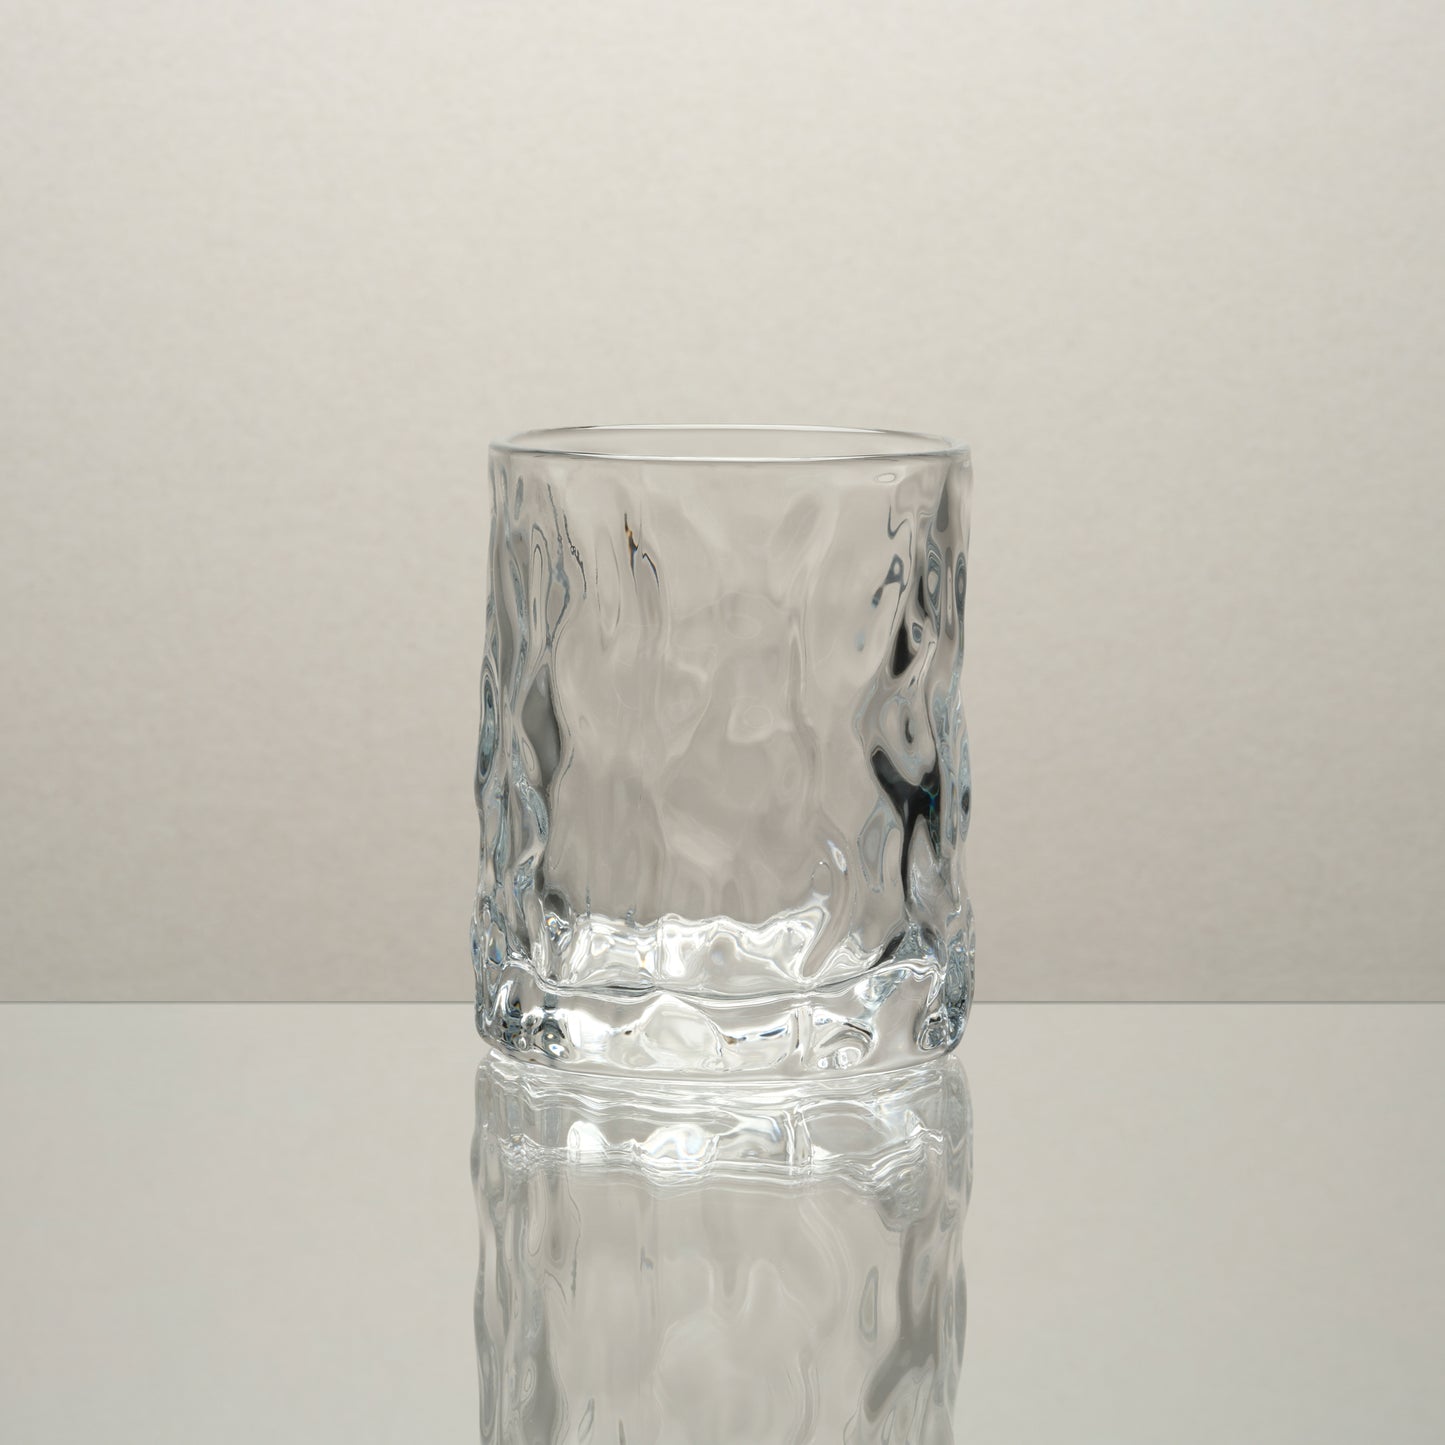 Japan Inspired Hammer Glass